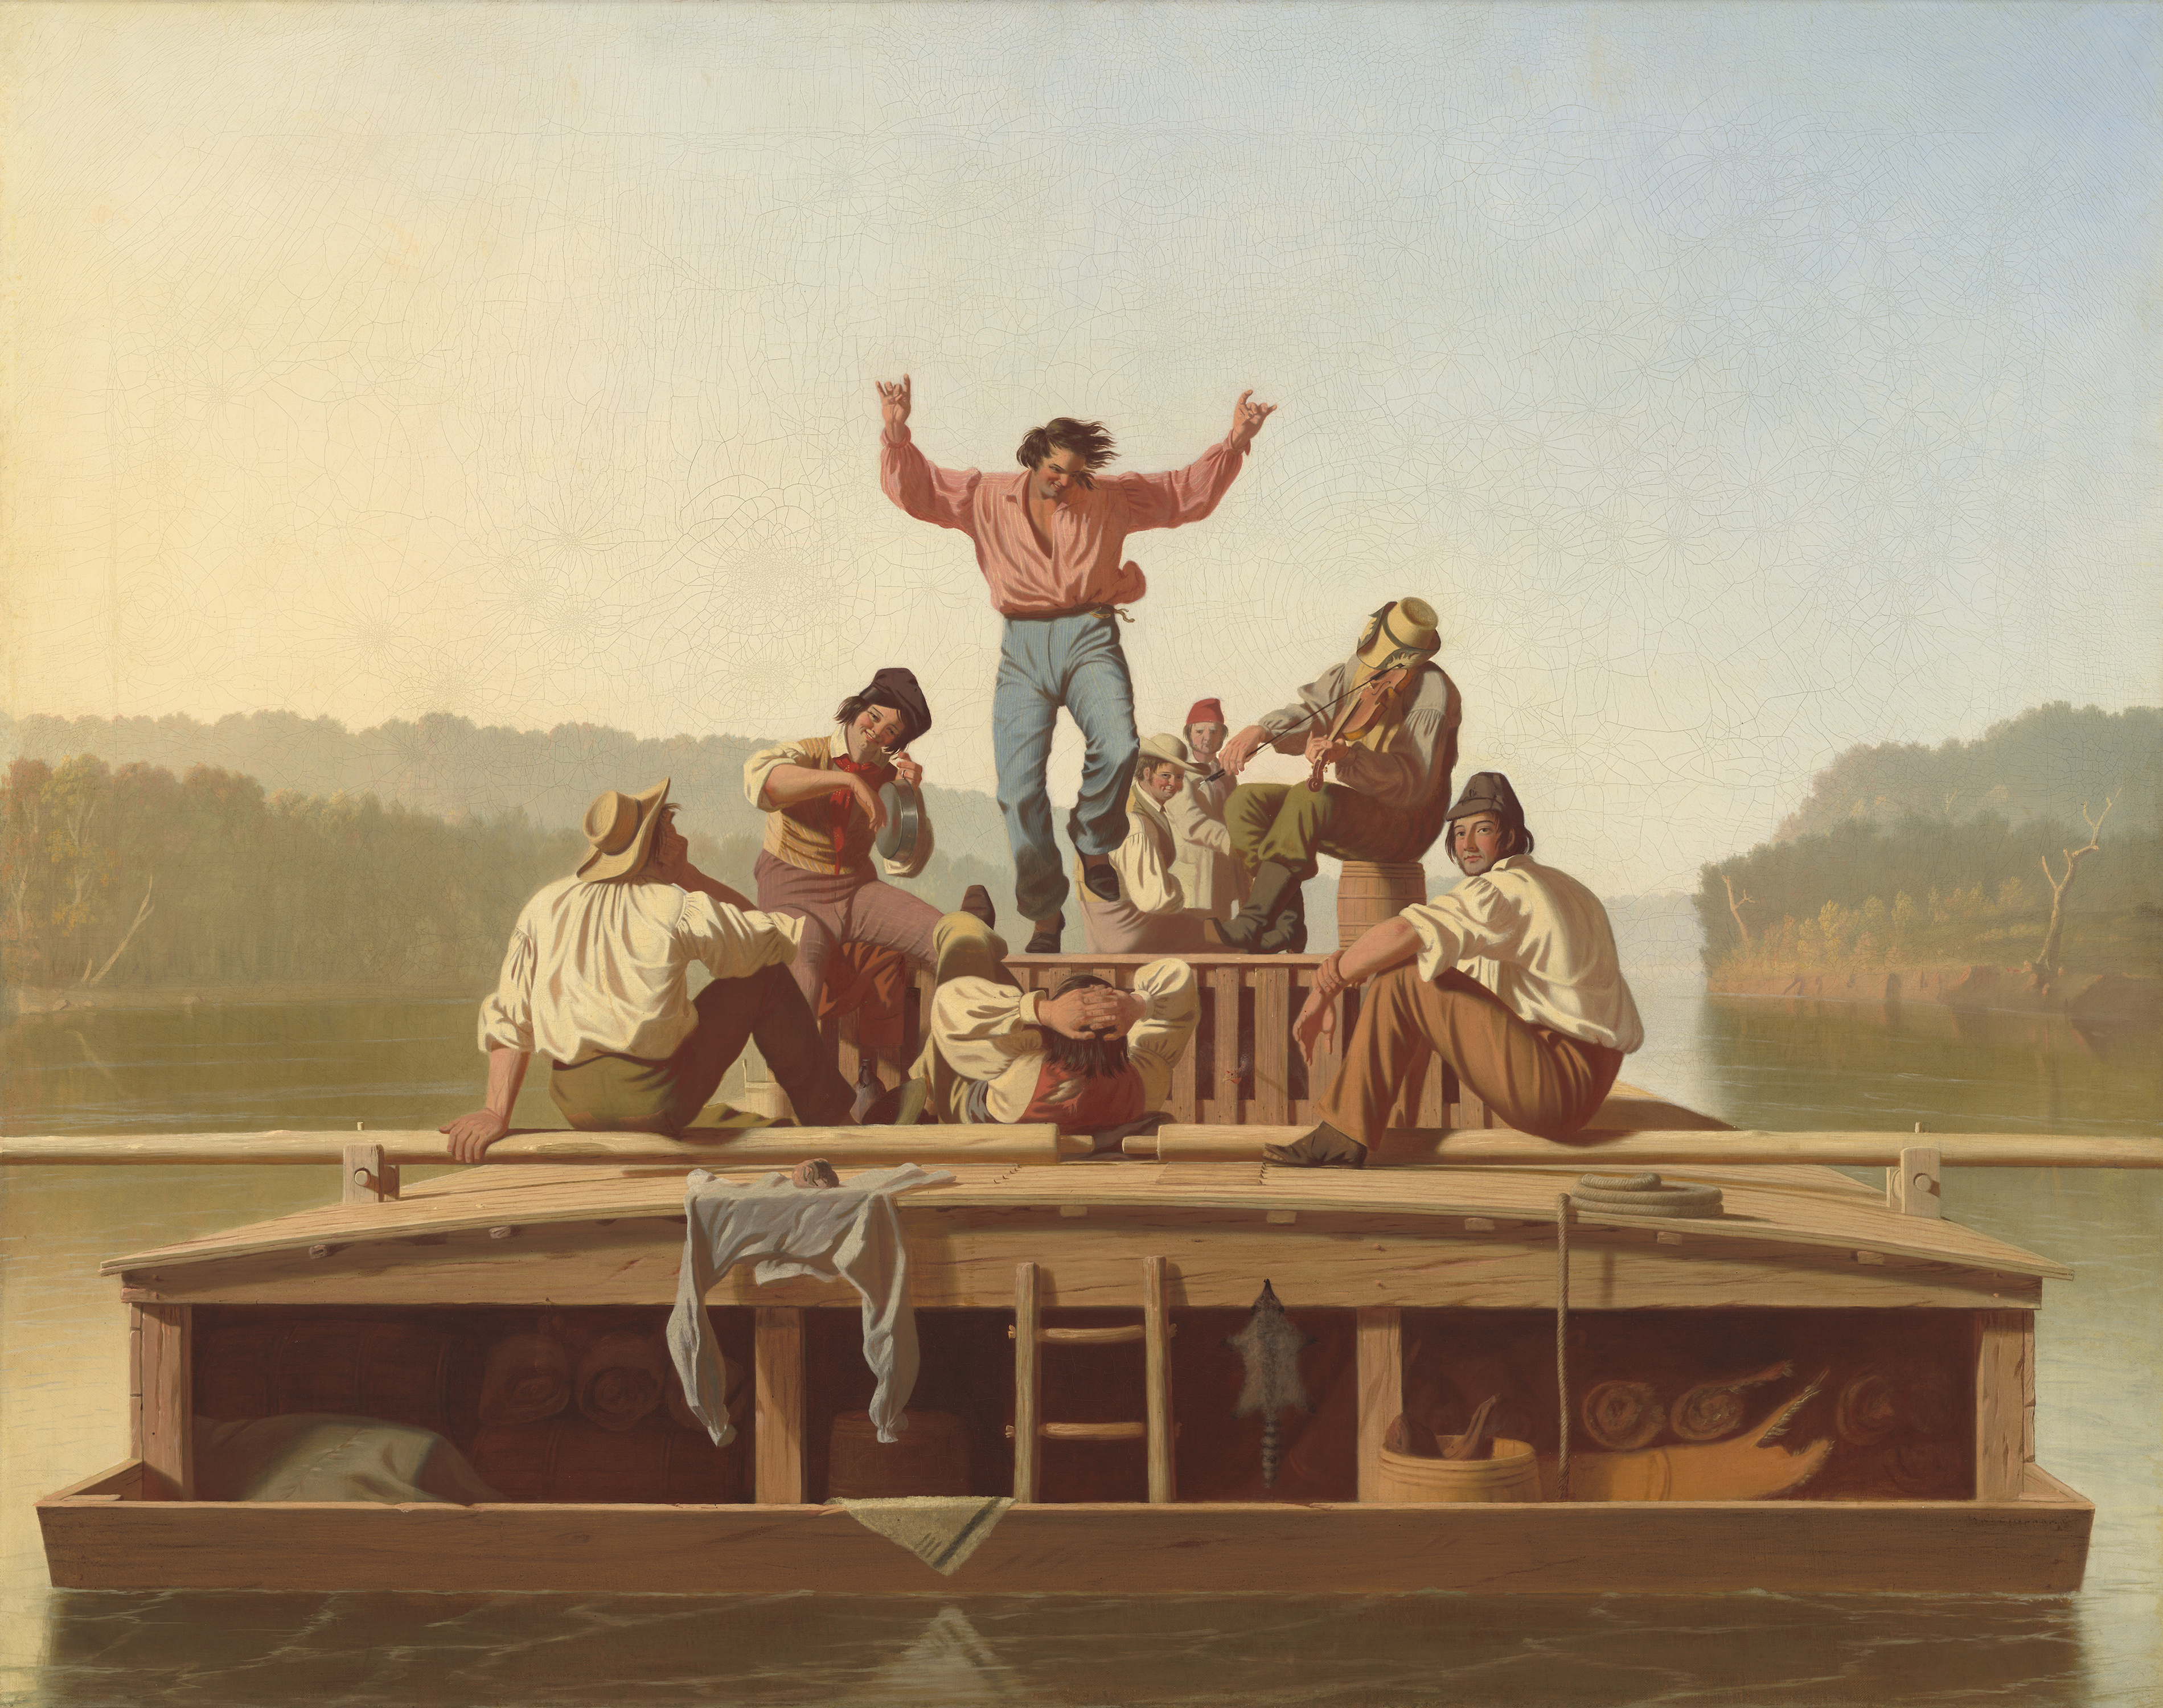 陽気な平底船の男たち by George Caleb Bingham - 1846年 